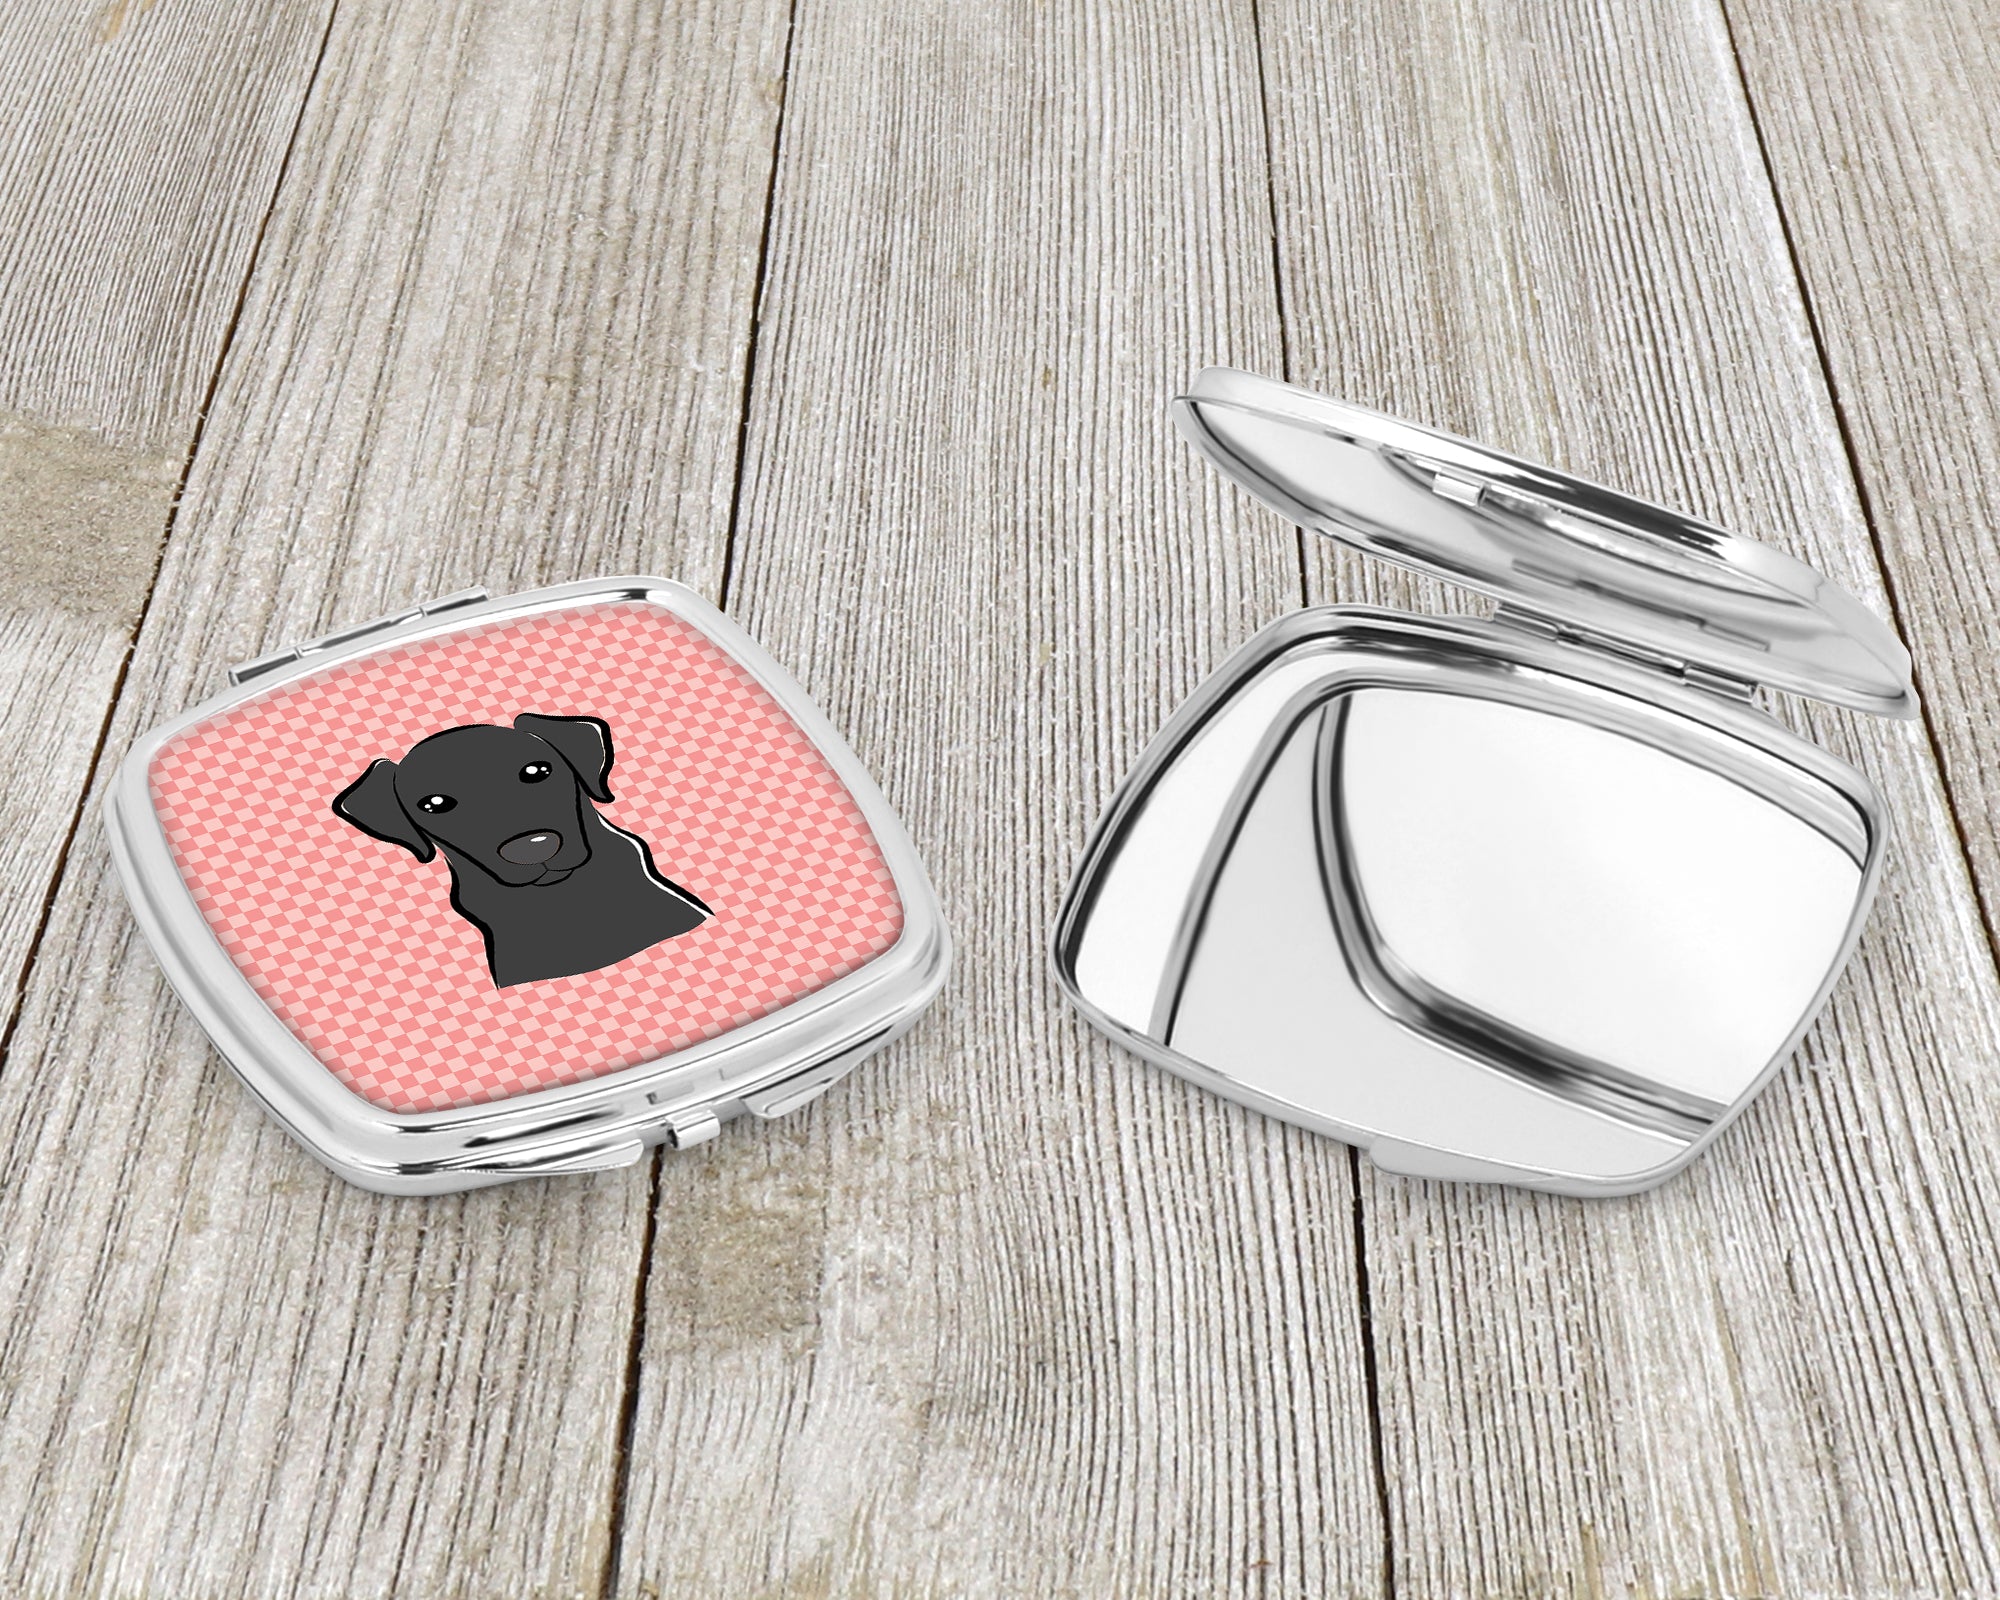 Checkerboard Pink Black Labrador Compact Mirror BB1235SCM